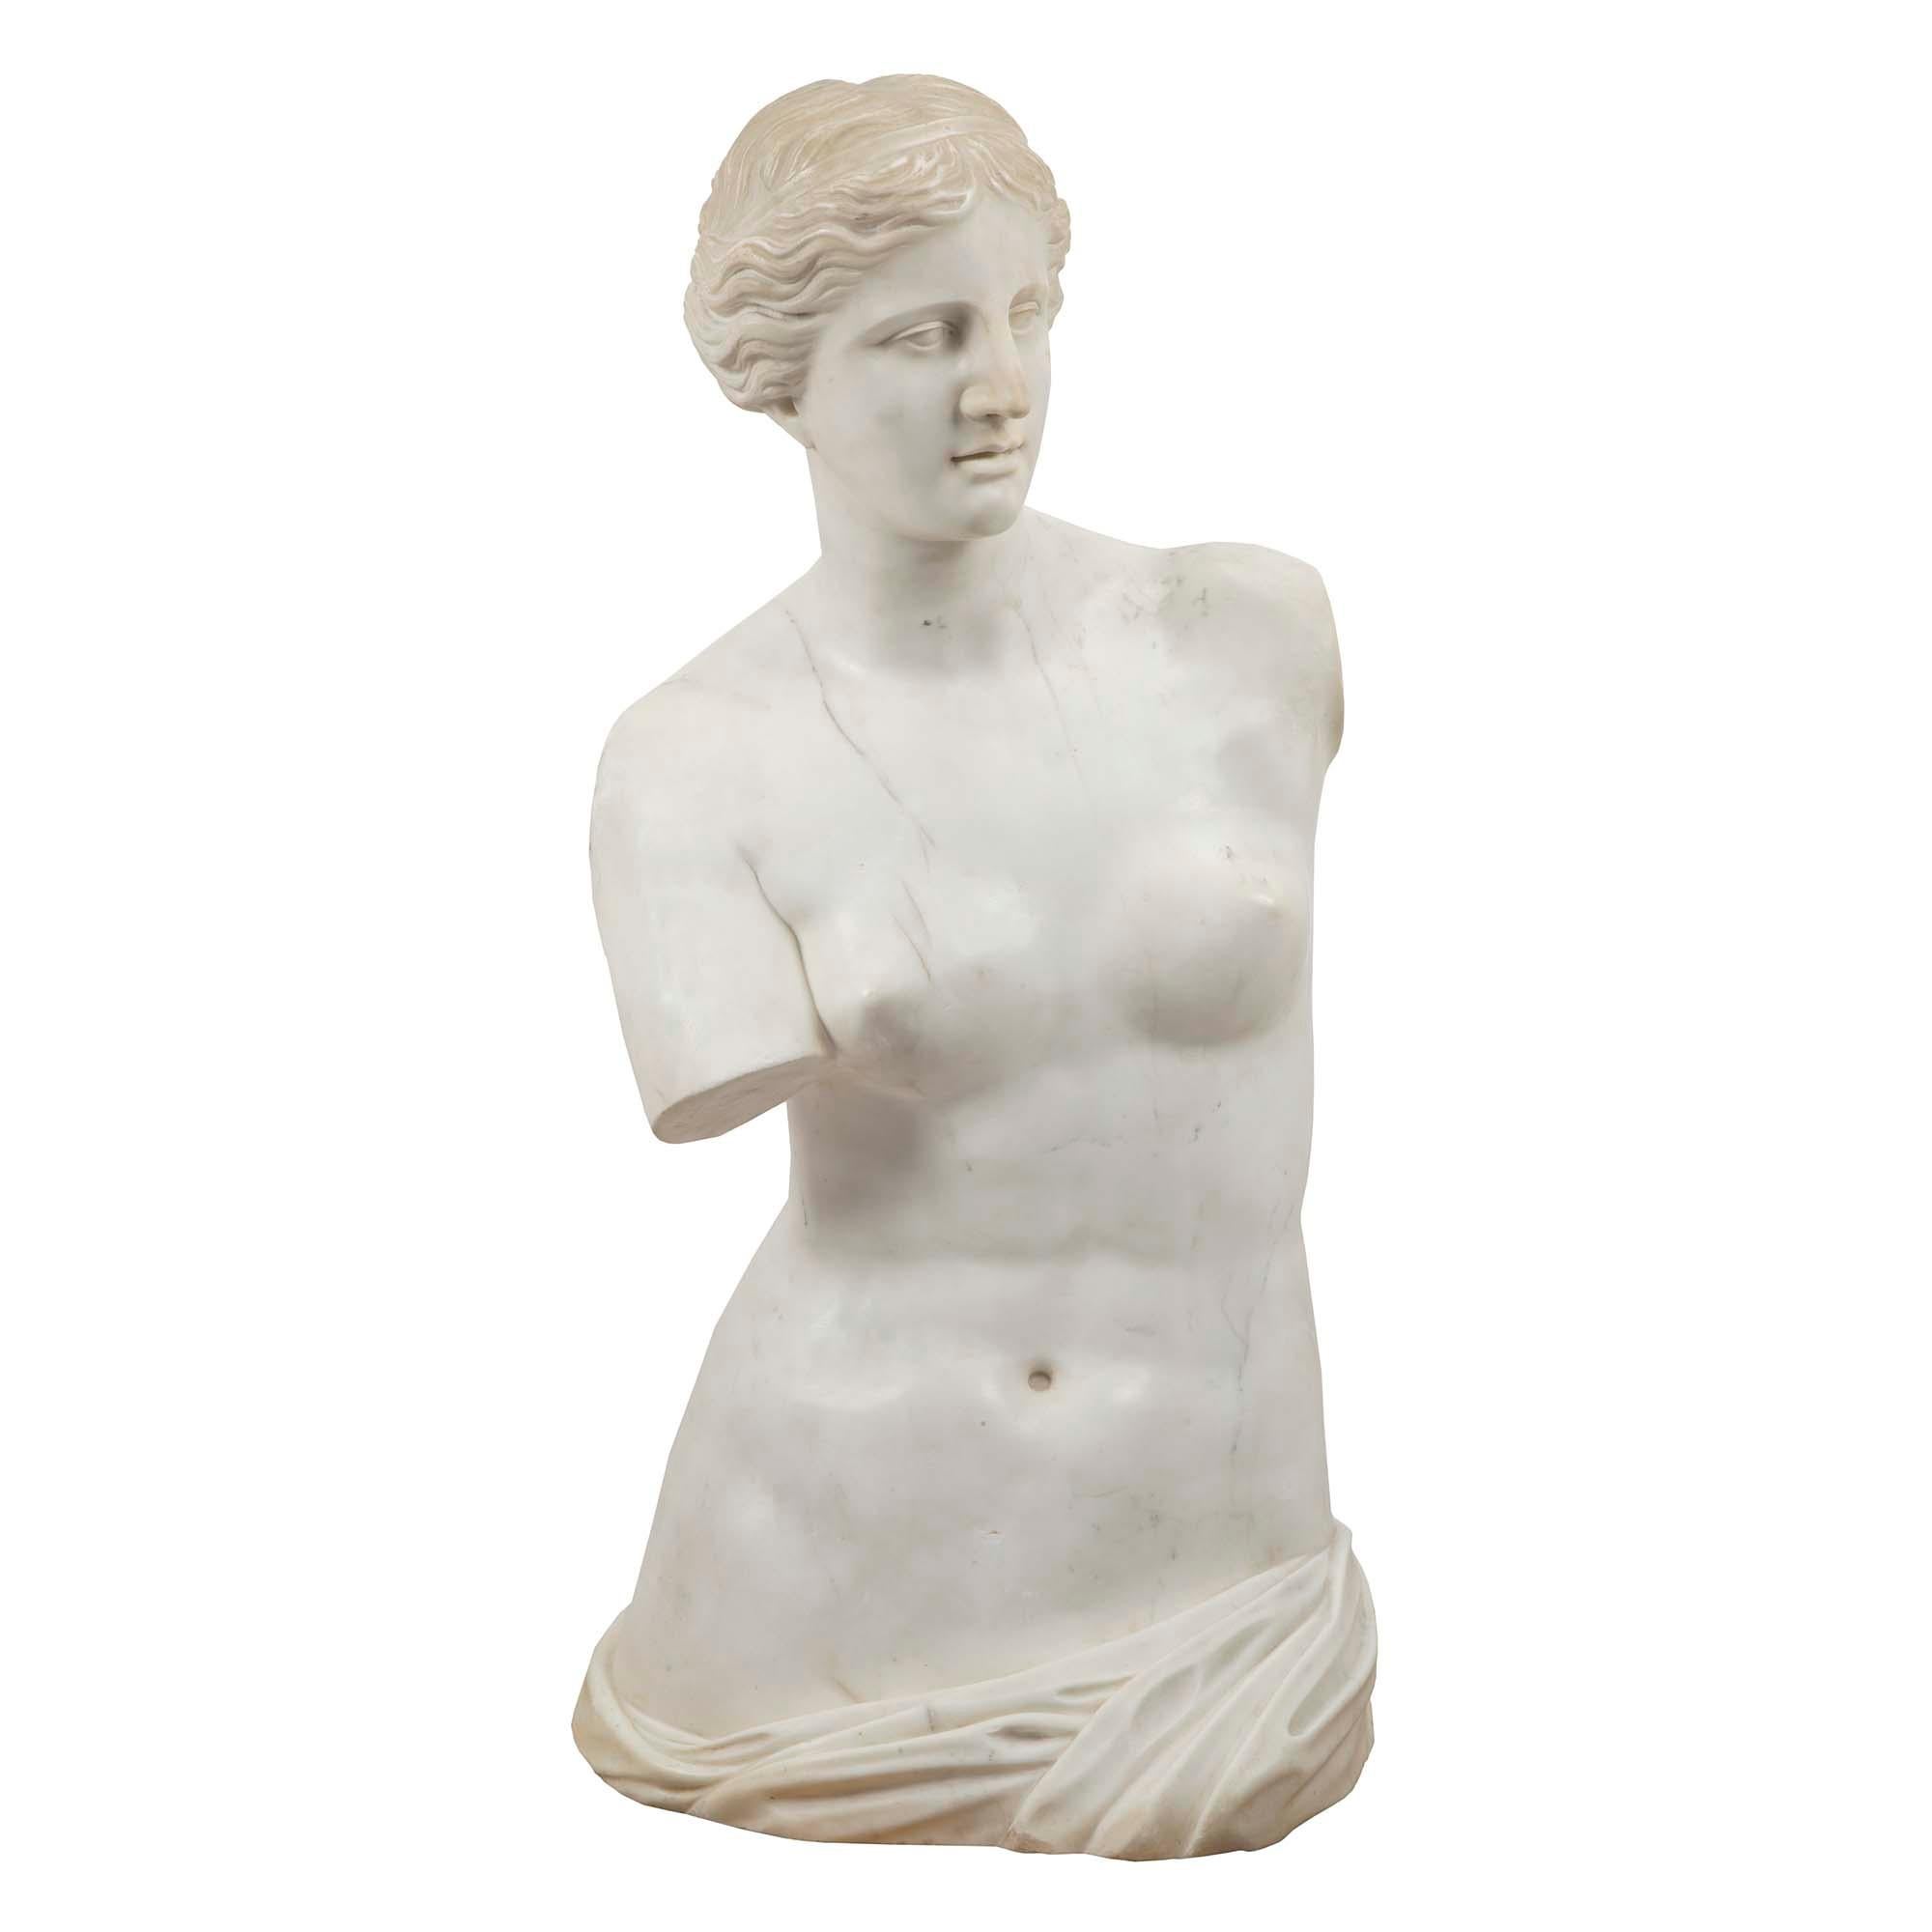 Eine beeindruckende und großformatige Venus de Milo aus weißem Carrara-Marmor aus dem 19. Jahrhundert. Sie ist wunderschön geformt, mit auffallenden Proportionen und viel Liebe zum Detail. Venus de Milo ist eine antike griechische Statue, die